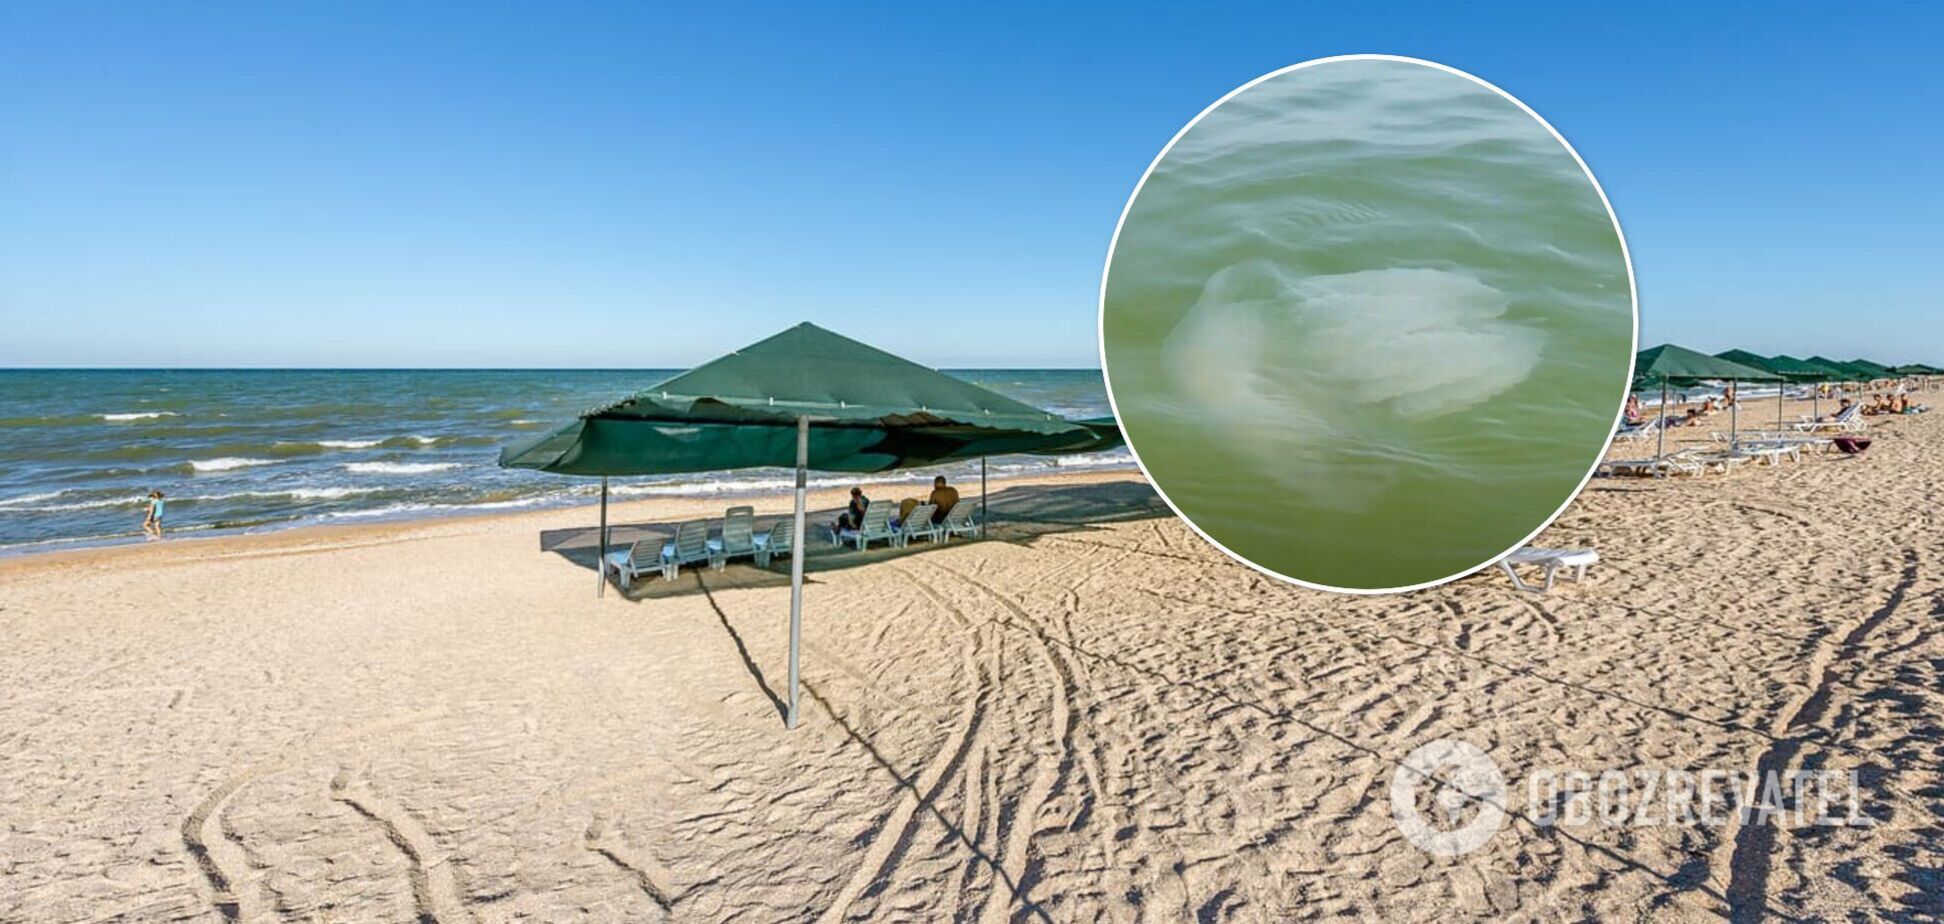 Купатися вже неприємно: туристи поскаржилися на навалу медуз в Азовському морі. Відео